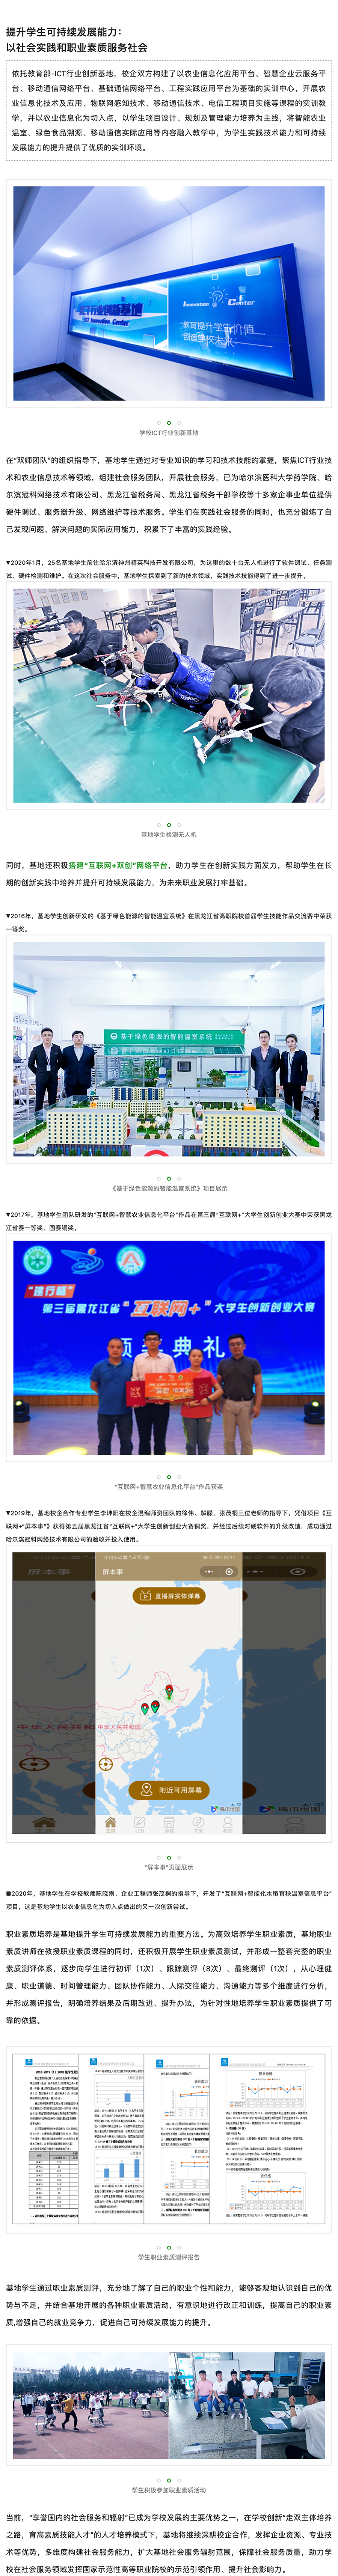 2 _ 黑龙江农业工程职业学院：构建多维度社会服务能力，打造宽辐射社会服务高地.png